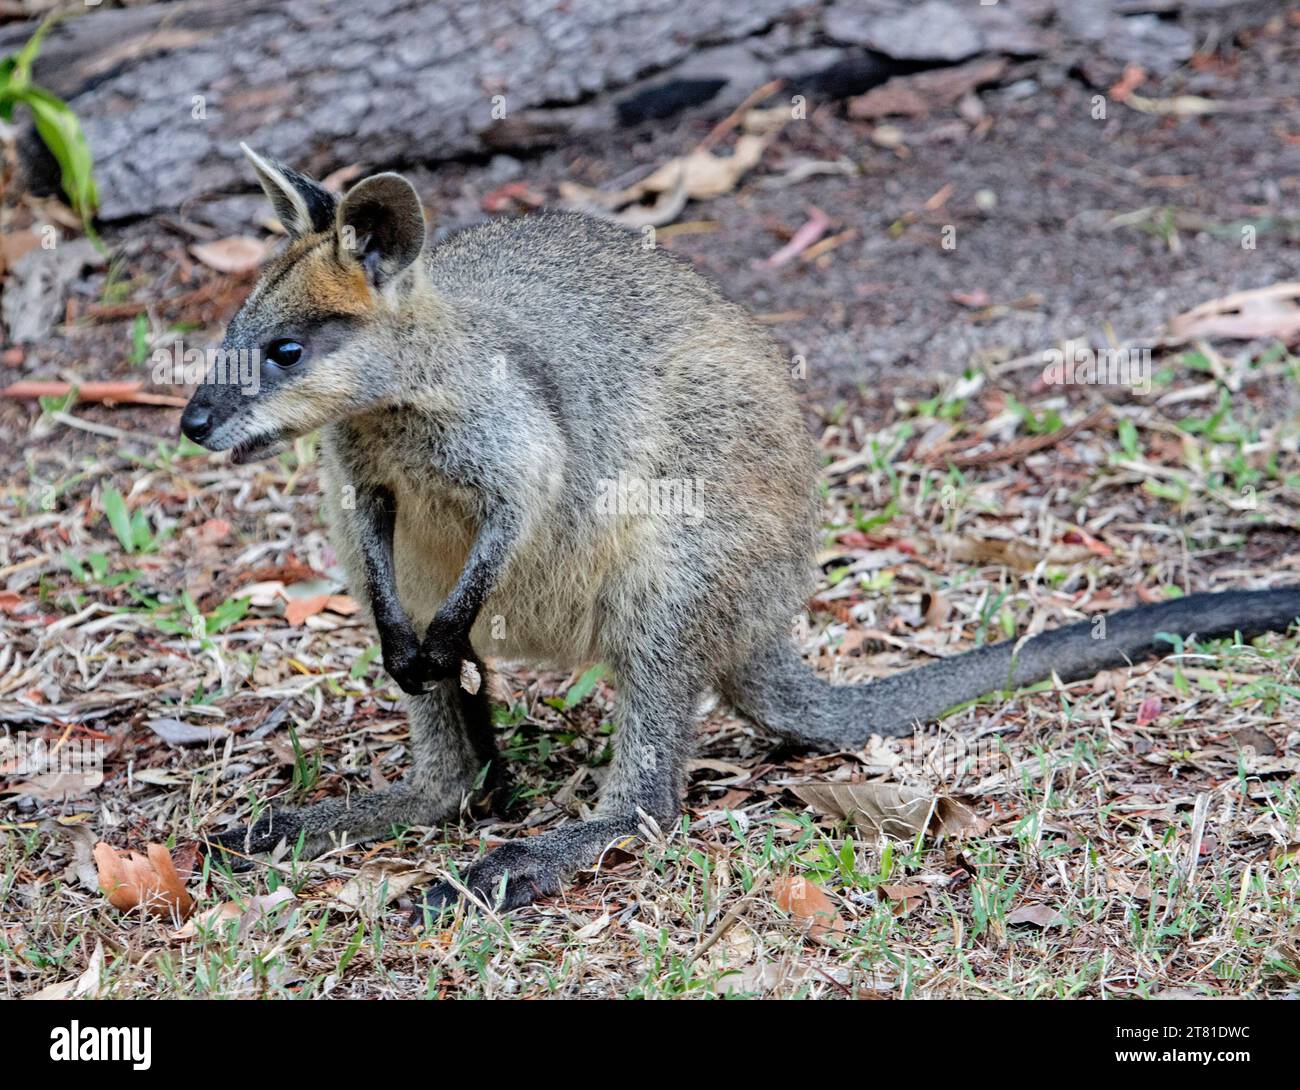 Swamp wallaby, Wallabia bicolour, a wild Australian marsupial in a rural garden. Stock Photo